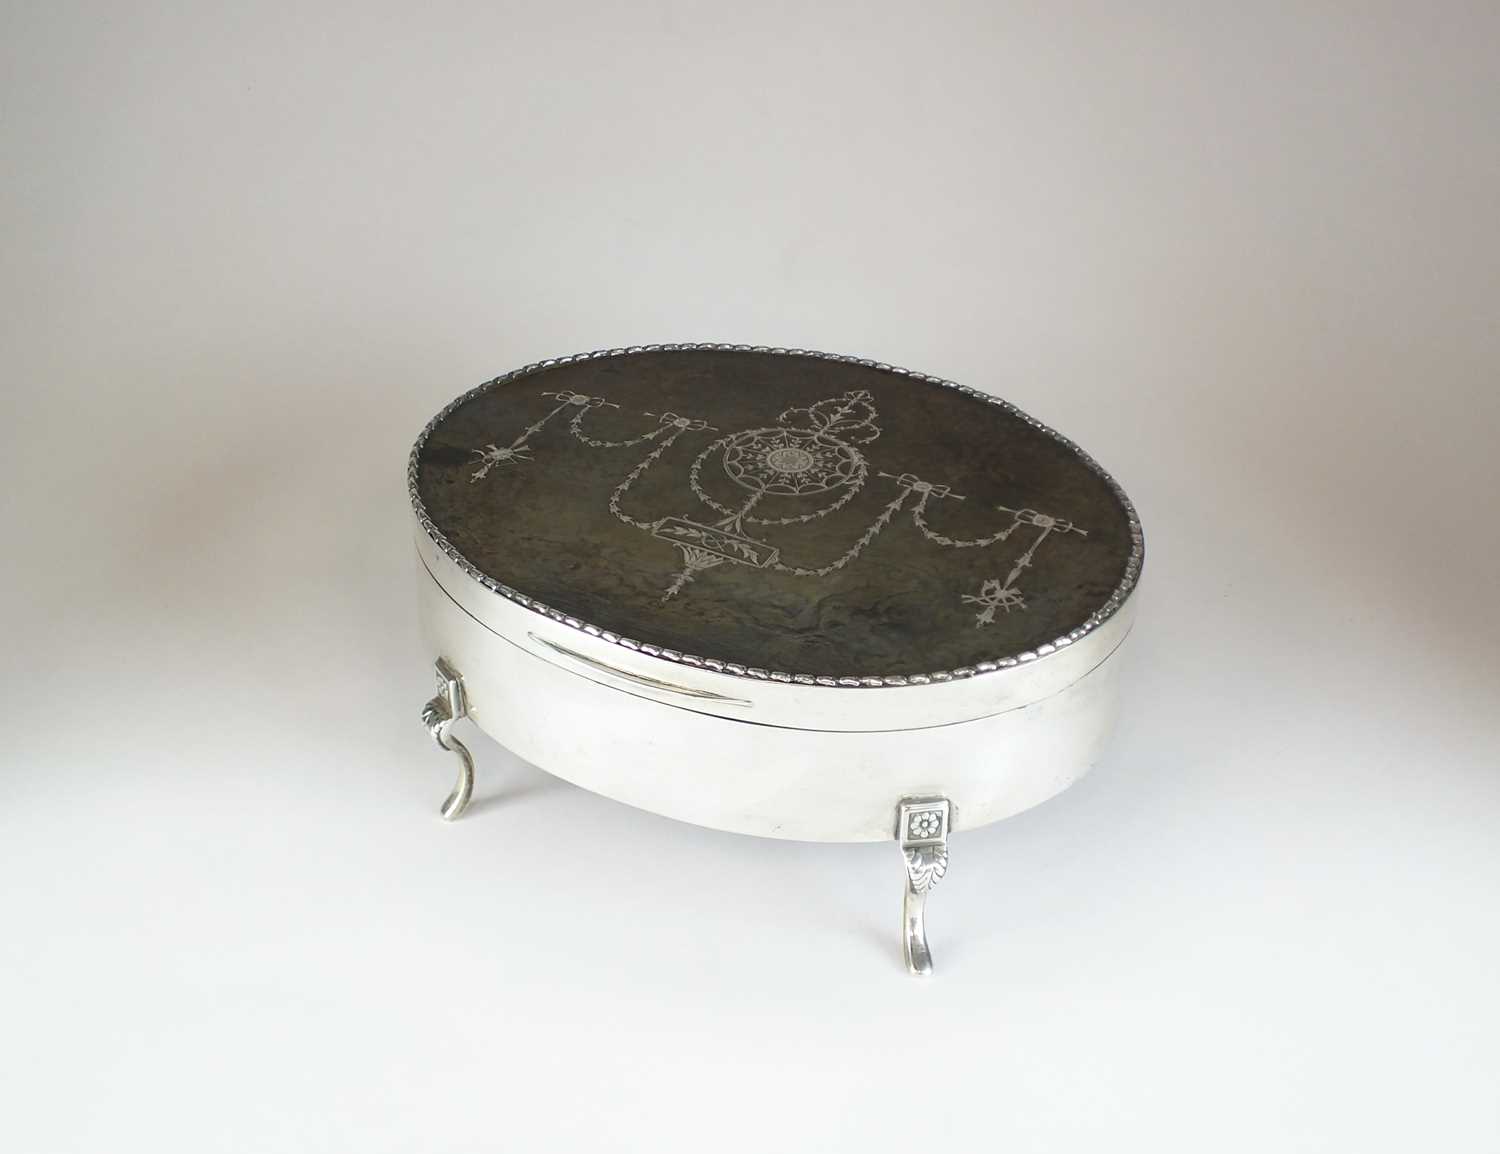 Lot 13 - An Edwardian silver and tortoiseshell mounted jewellery box